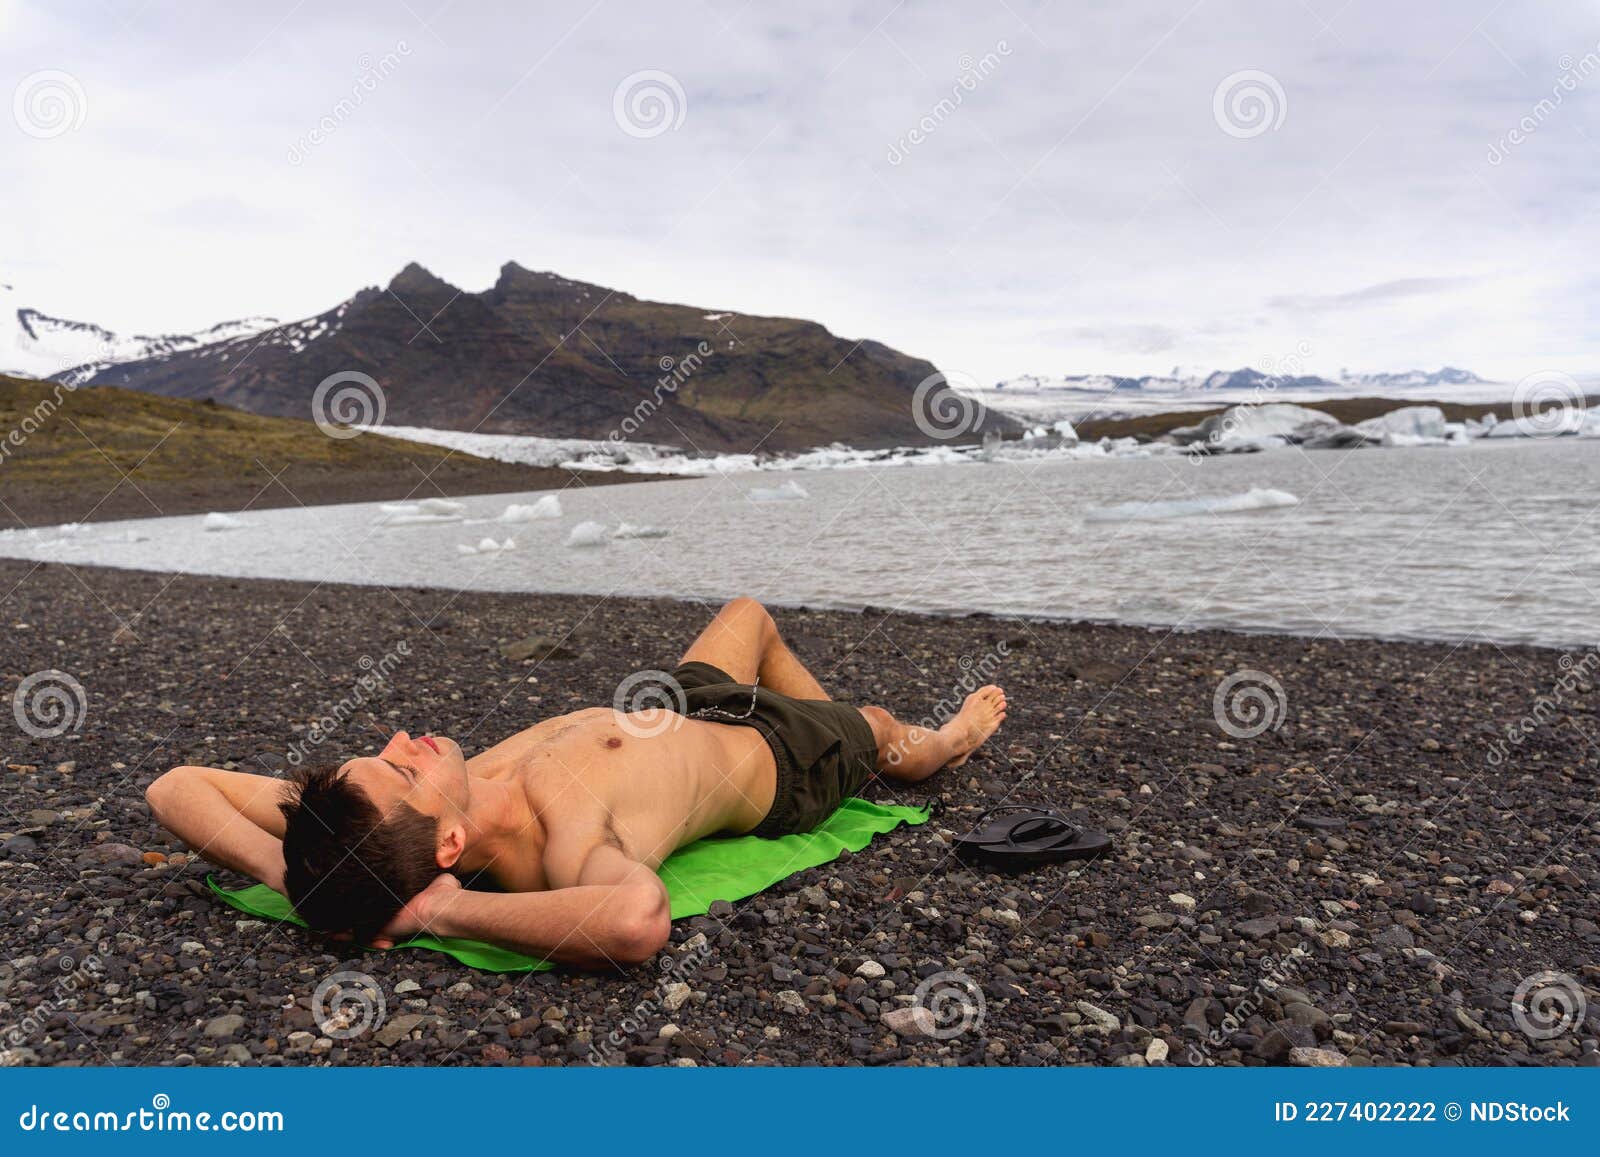 Loco Soñando Con Un Verano Caliente. Tomar El Sol En El Frío Clima De Islandia. Glaciar En El Fondo Foto de archivo Imagen de loco, lago: 227402222